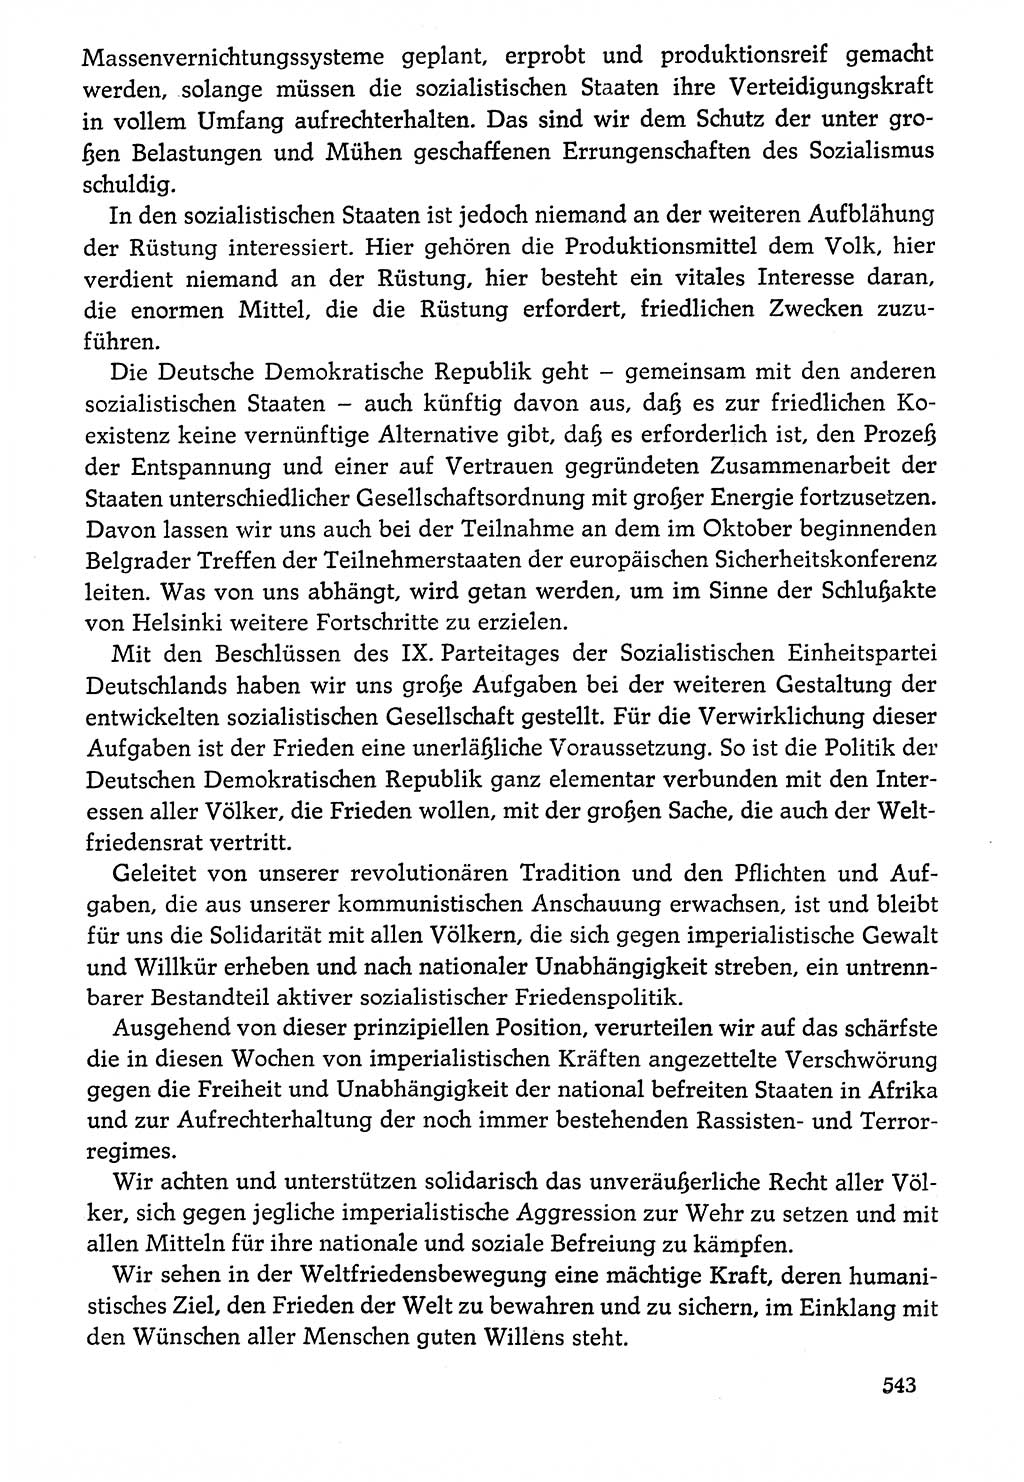 Dokumente der Sozialistischen Einheitspartei Deutschlands (SED) [Deutsche Demokratische Republik (DDR)] 1976-1977, Seite 543 (Dok. SED DDR 1976-1977, S. 543)